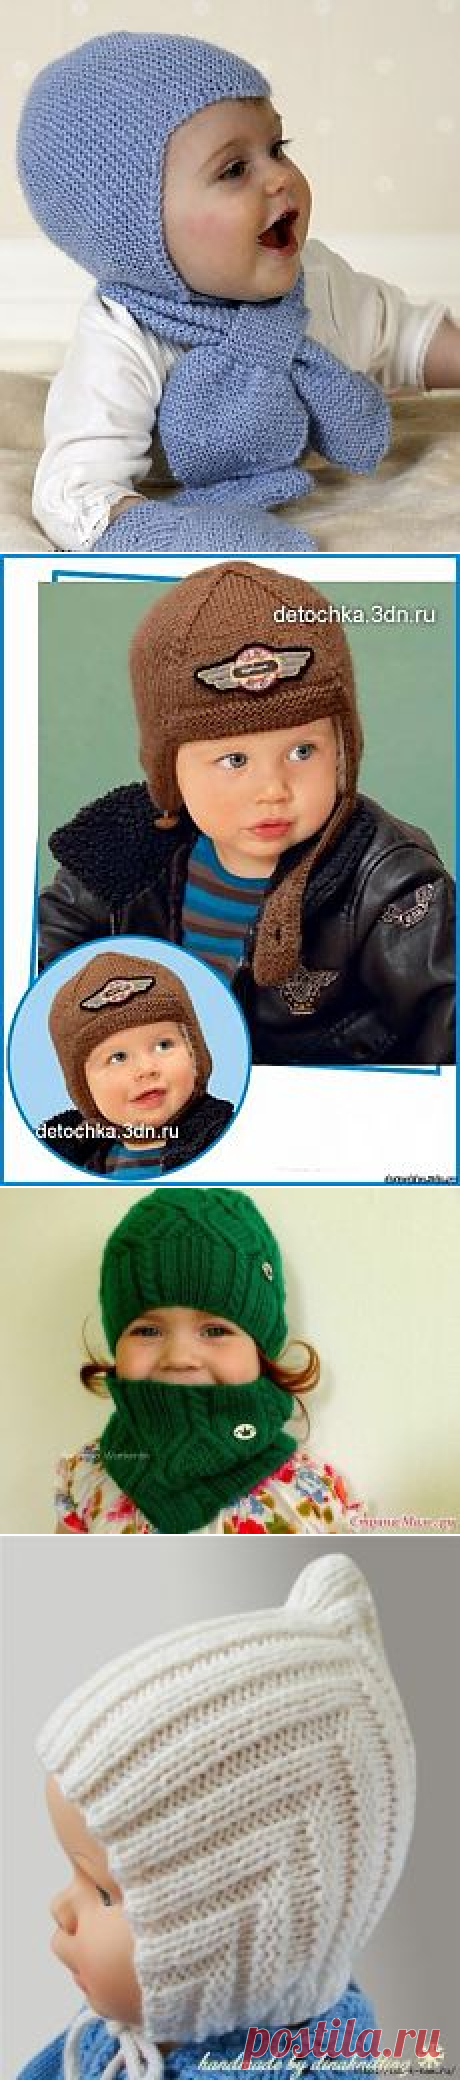 Поиск на Постиле: вязаные шапочки для малышей